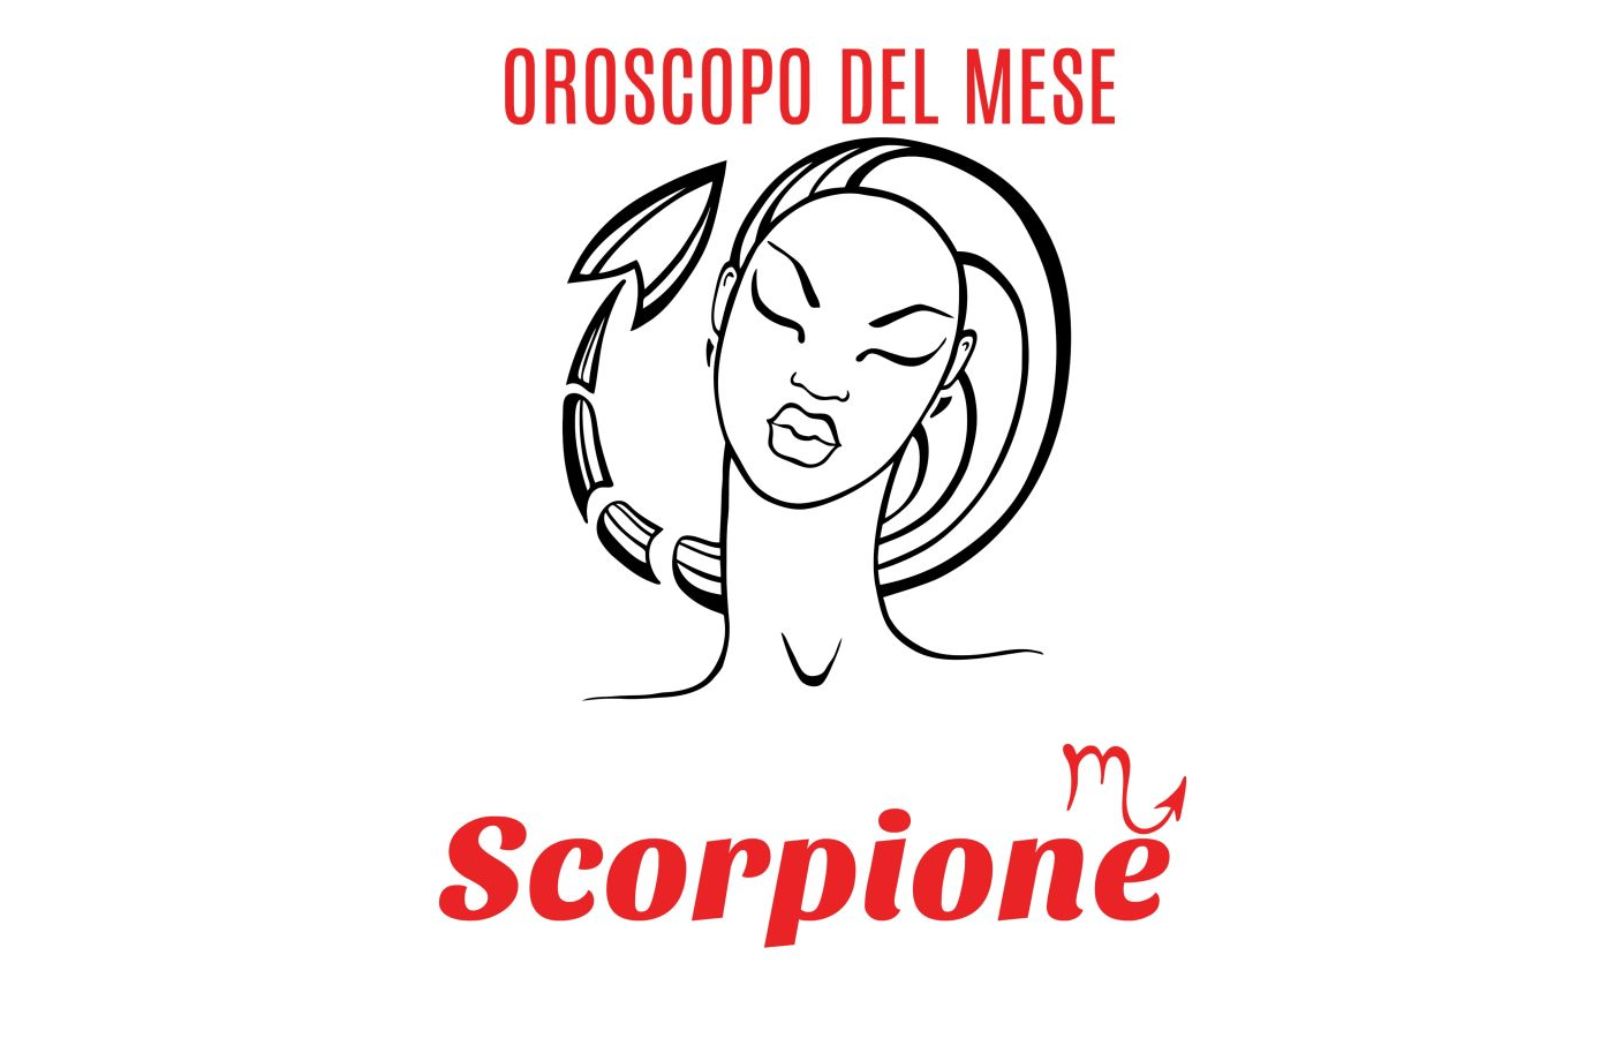 Oroscopo del mese: Scorpione - settembre 2020